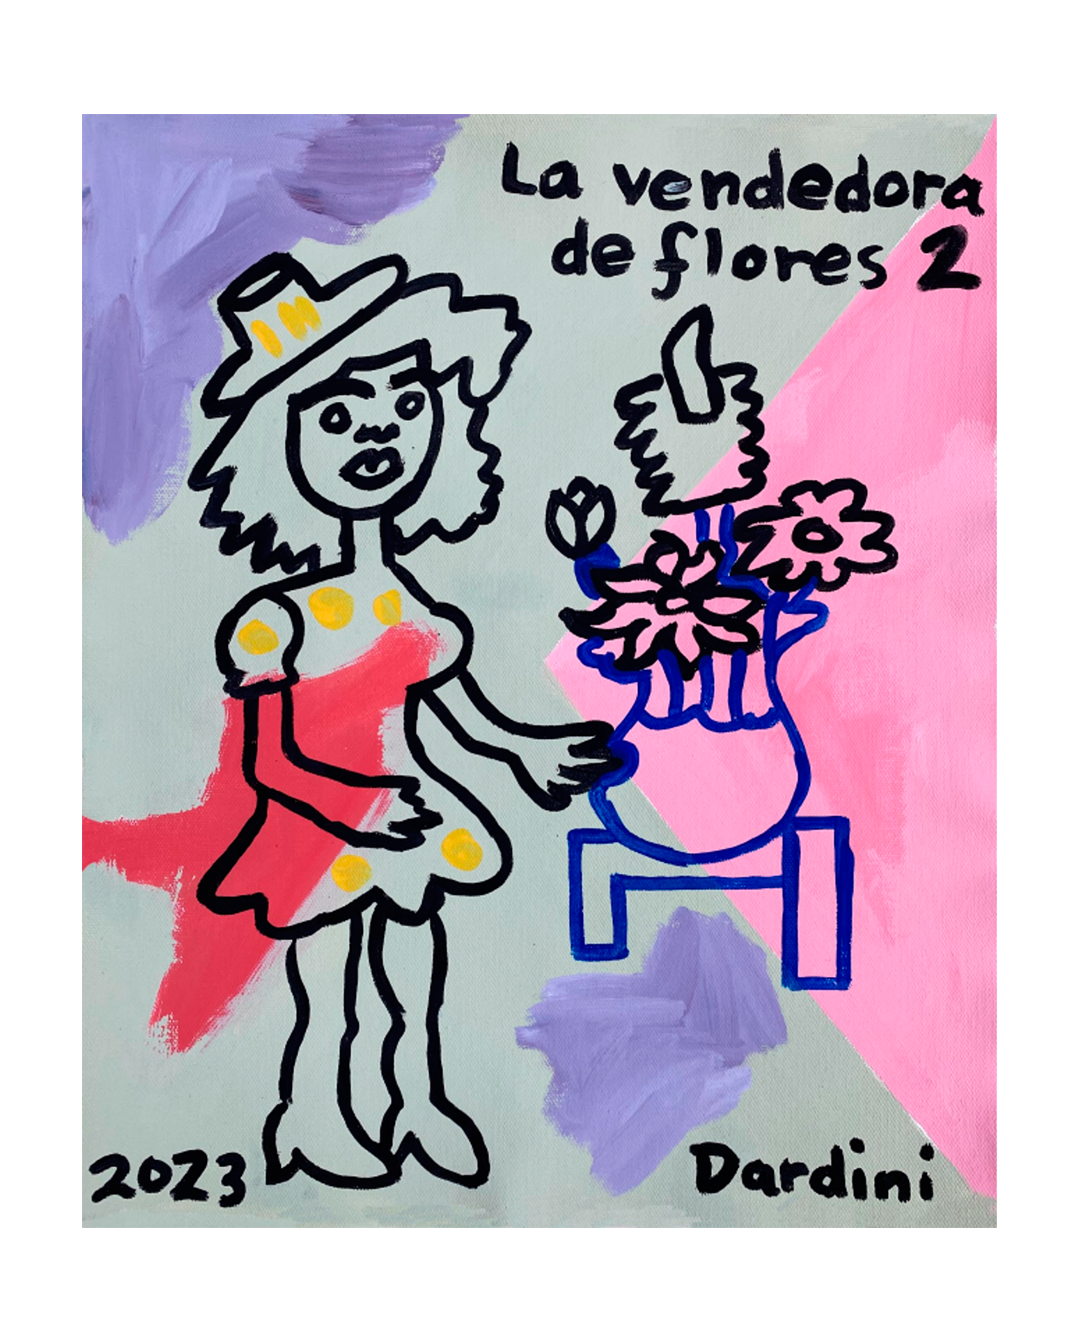 Dardini "Flores"